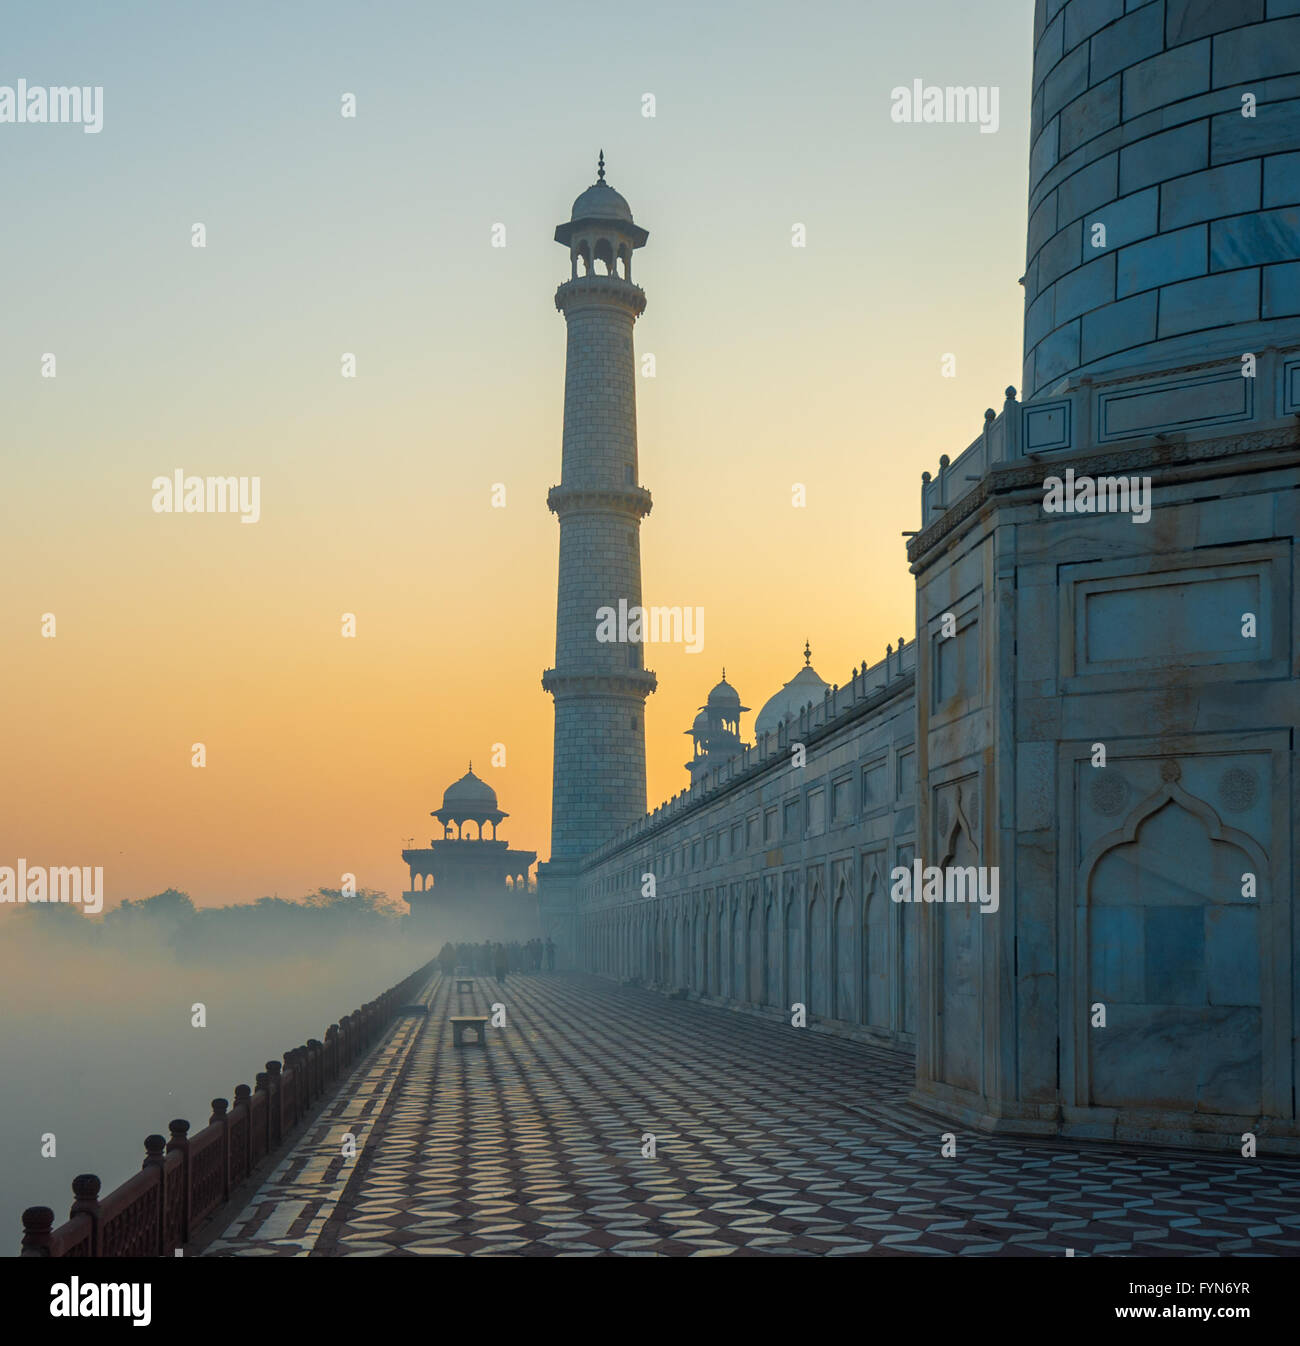 Al amanecer, el Taj Mahal de Agra, India Foto de stock